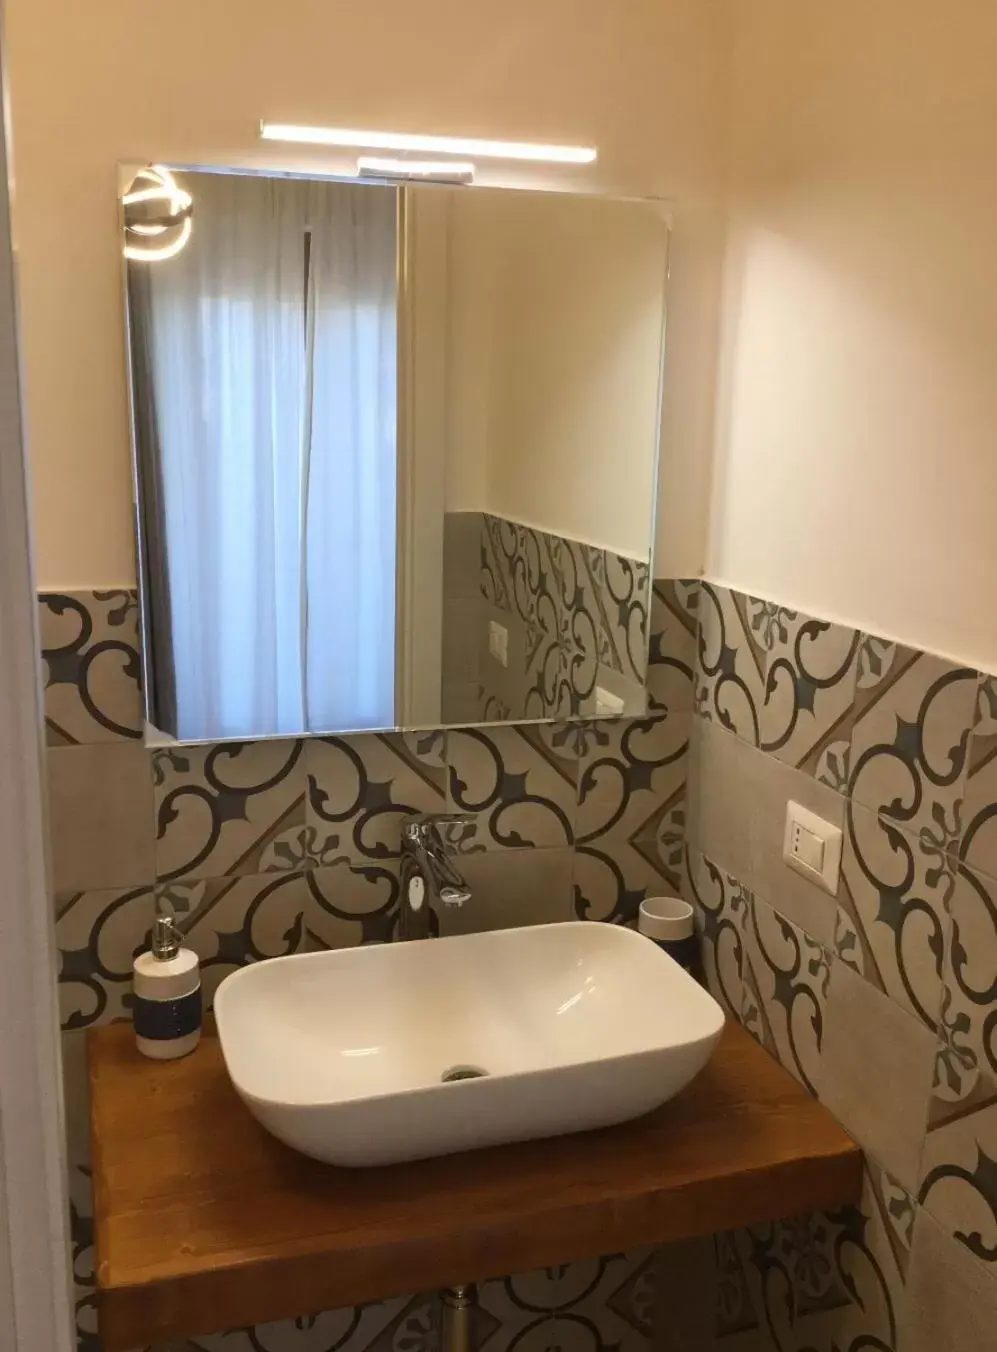 Bathroom in B&B Home Sweet Home - Affitti Brevi Italia